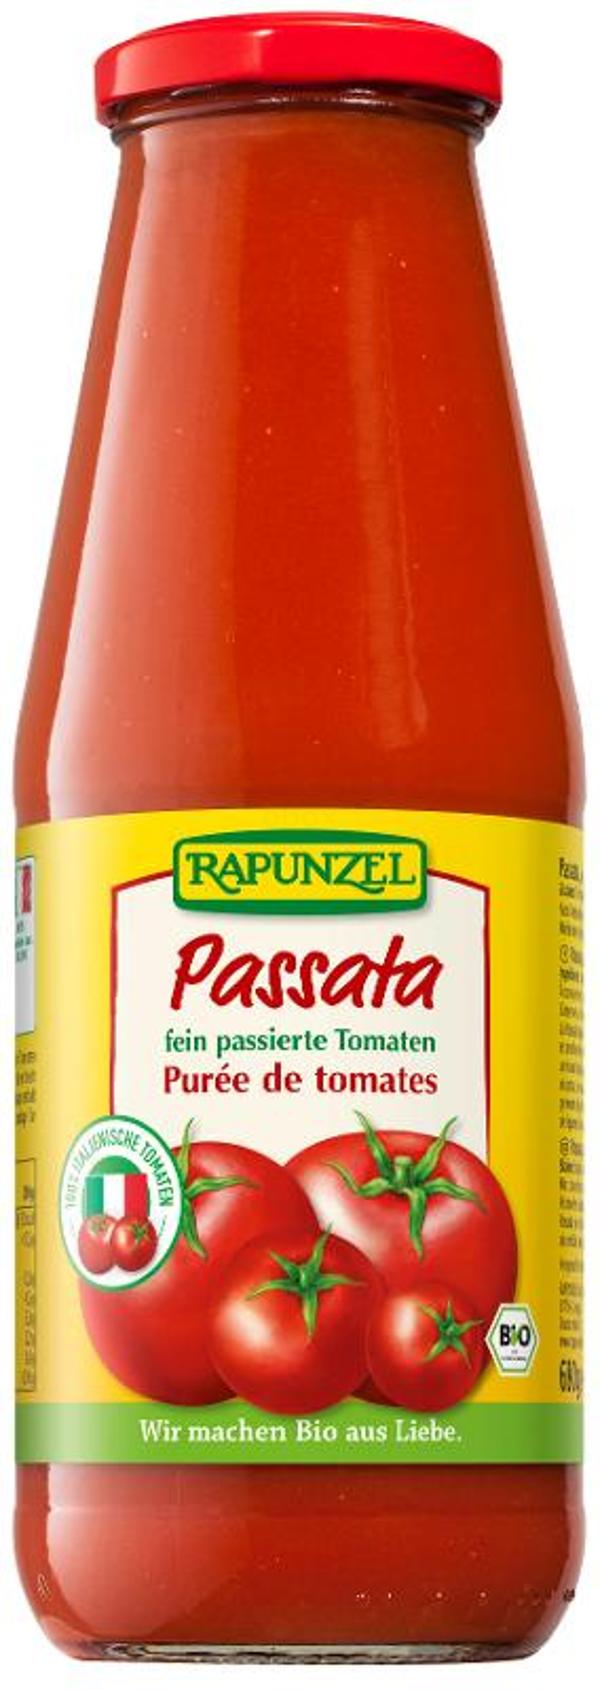 Produktfoto zu Passata fein passierte Tomaten